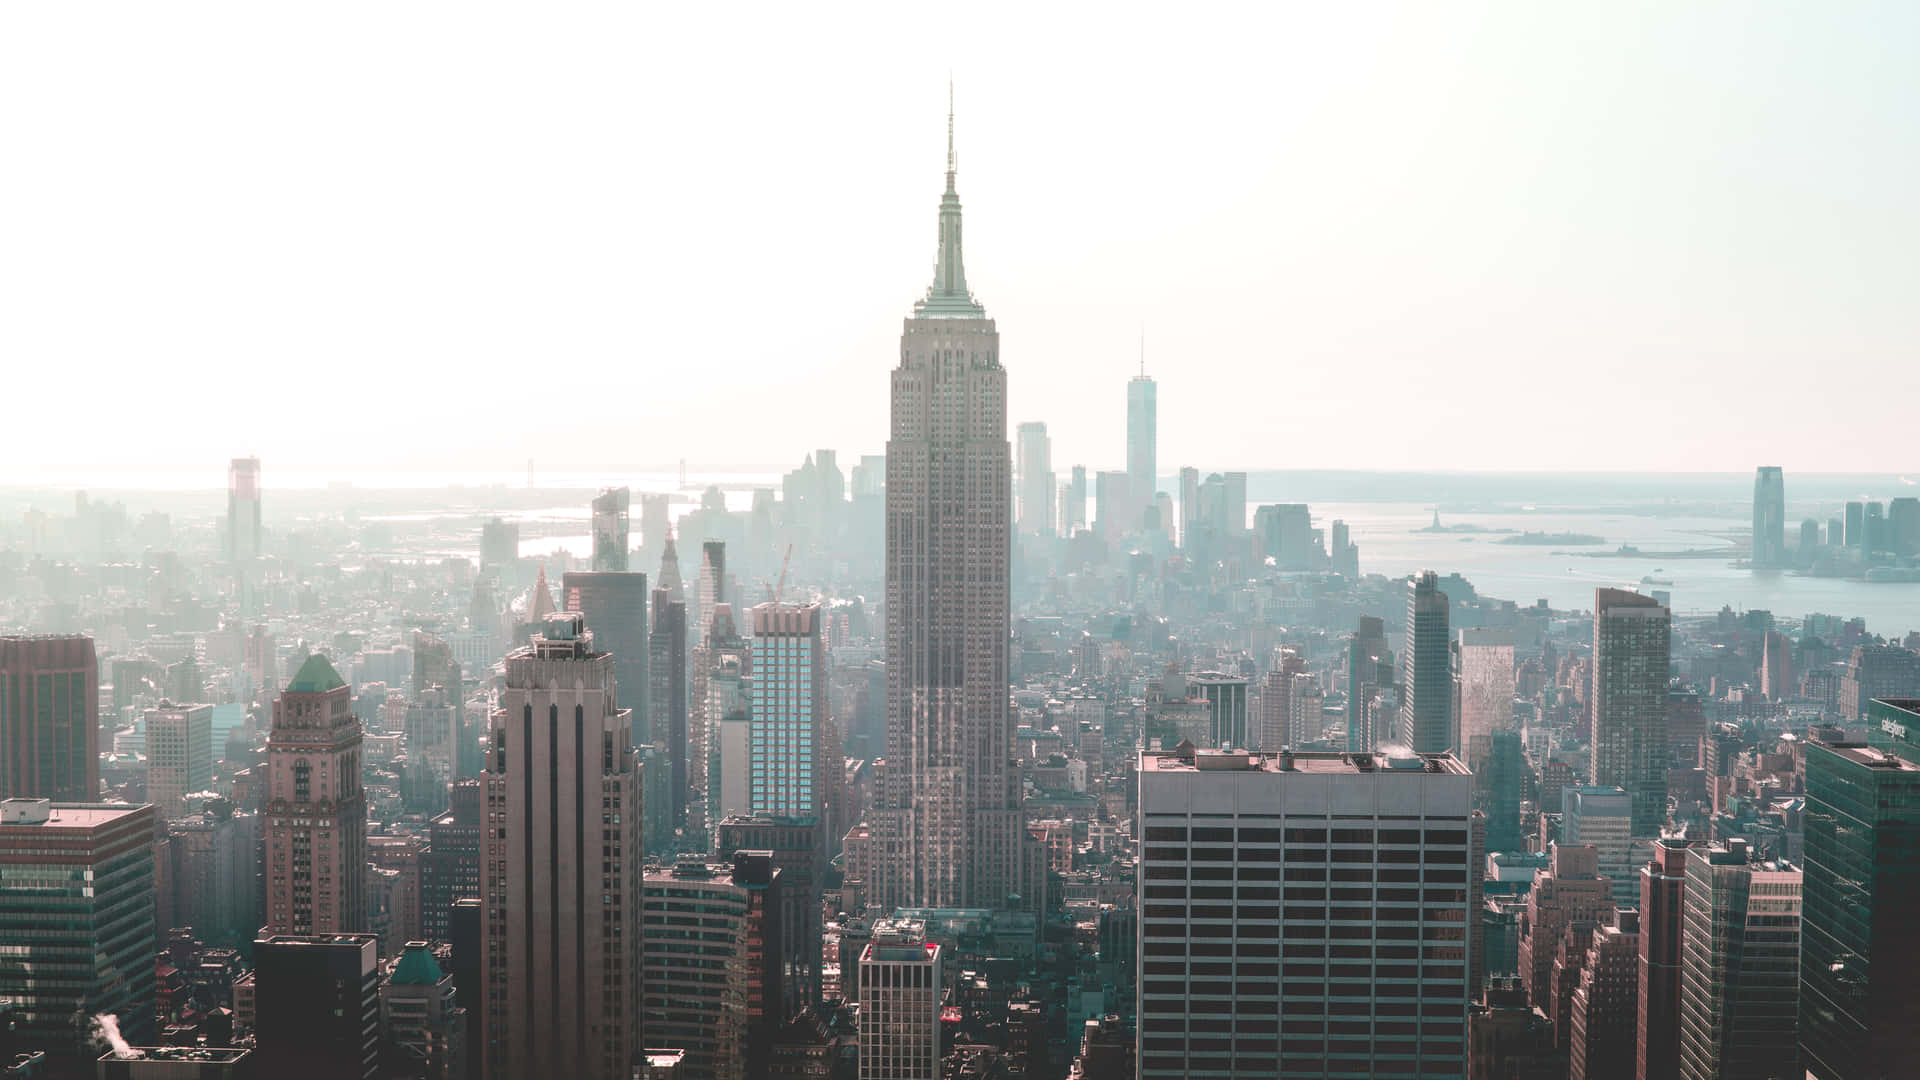 Illuminandol'orizzonte Di New York City: L'iconico Empire State Building.